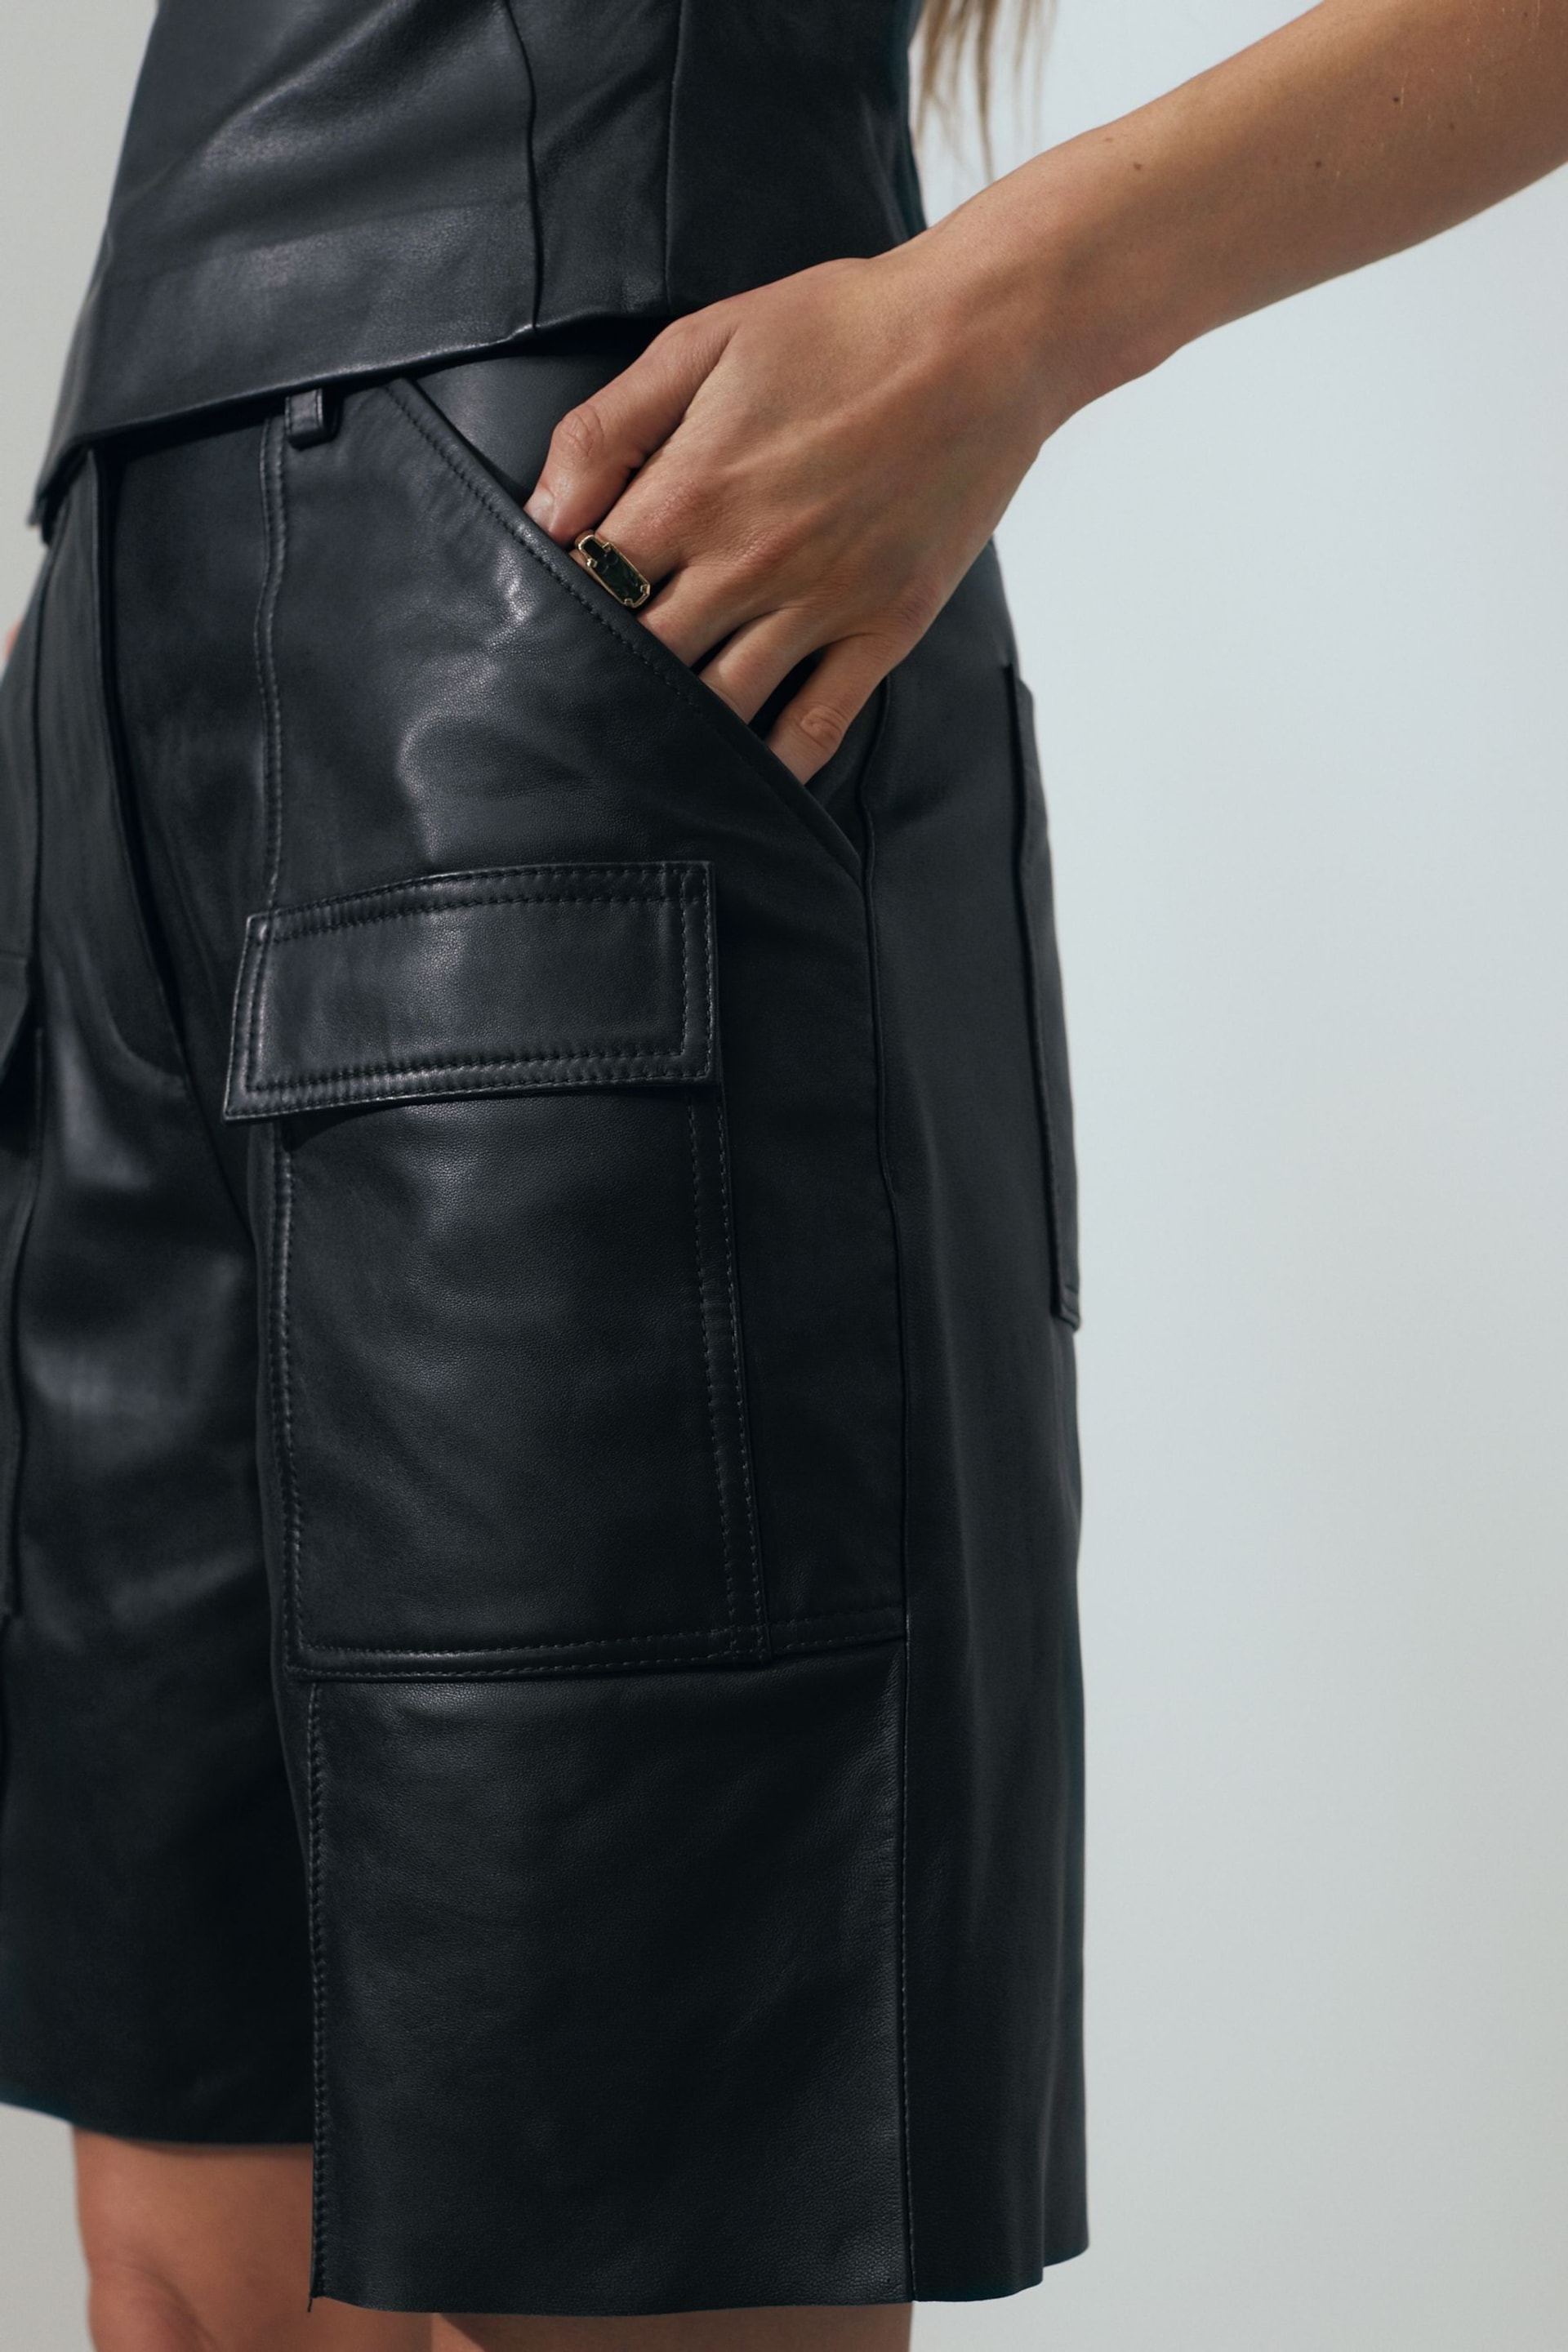 Reiss Black Eliana Leather Cargo Shorts - Image 3 of 7